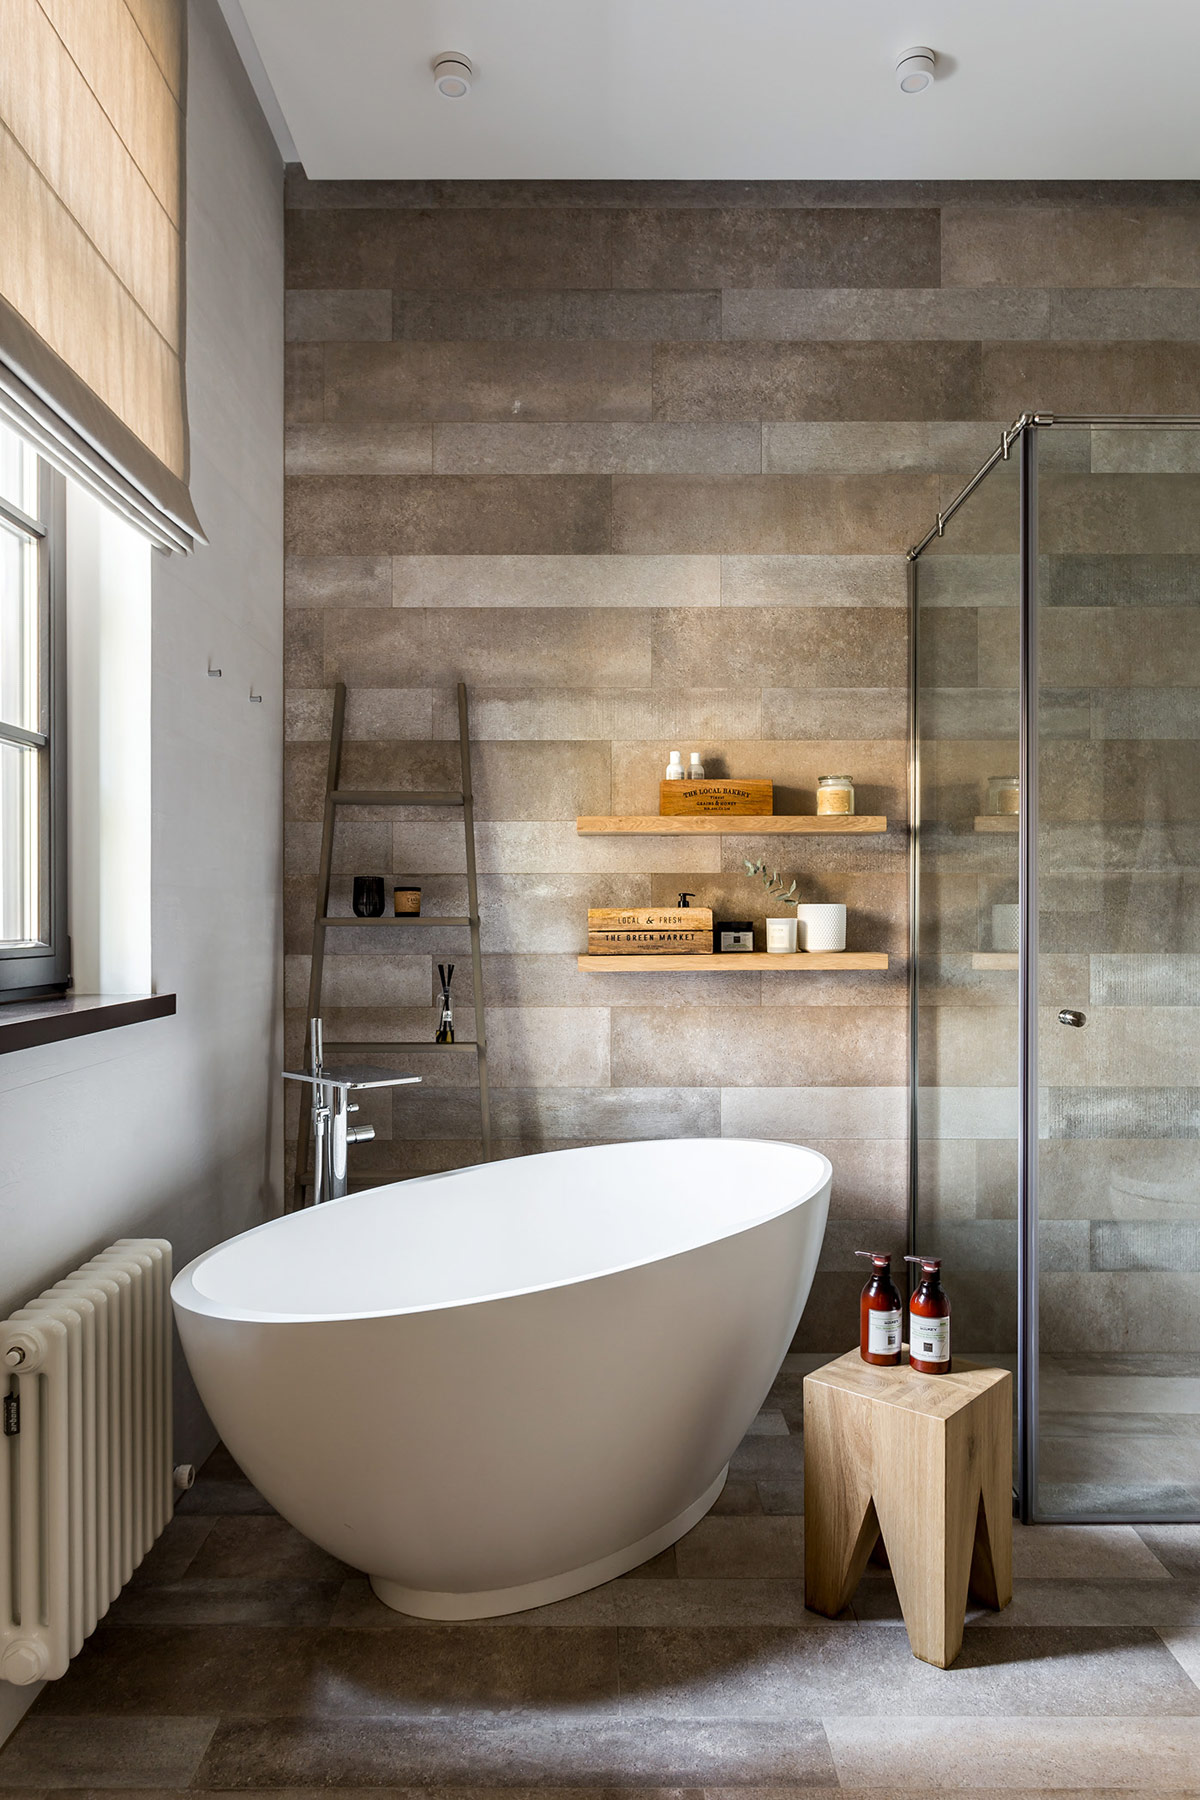 Một bồn tắm độc lập nằm vừa khít trong góc phòng, nơi nhận được ánh nắng mặt trời trực tiếp trong ngôi nhà phong cách Rustic.